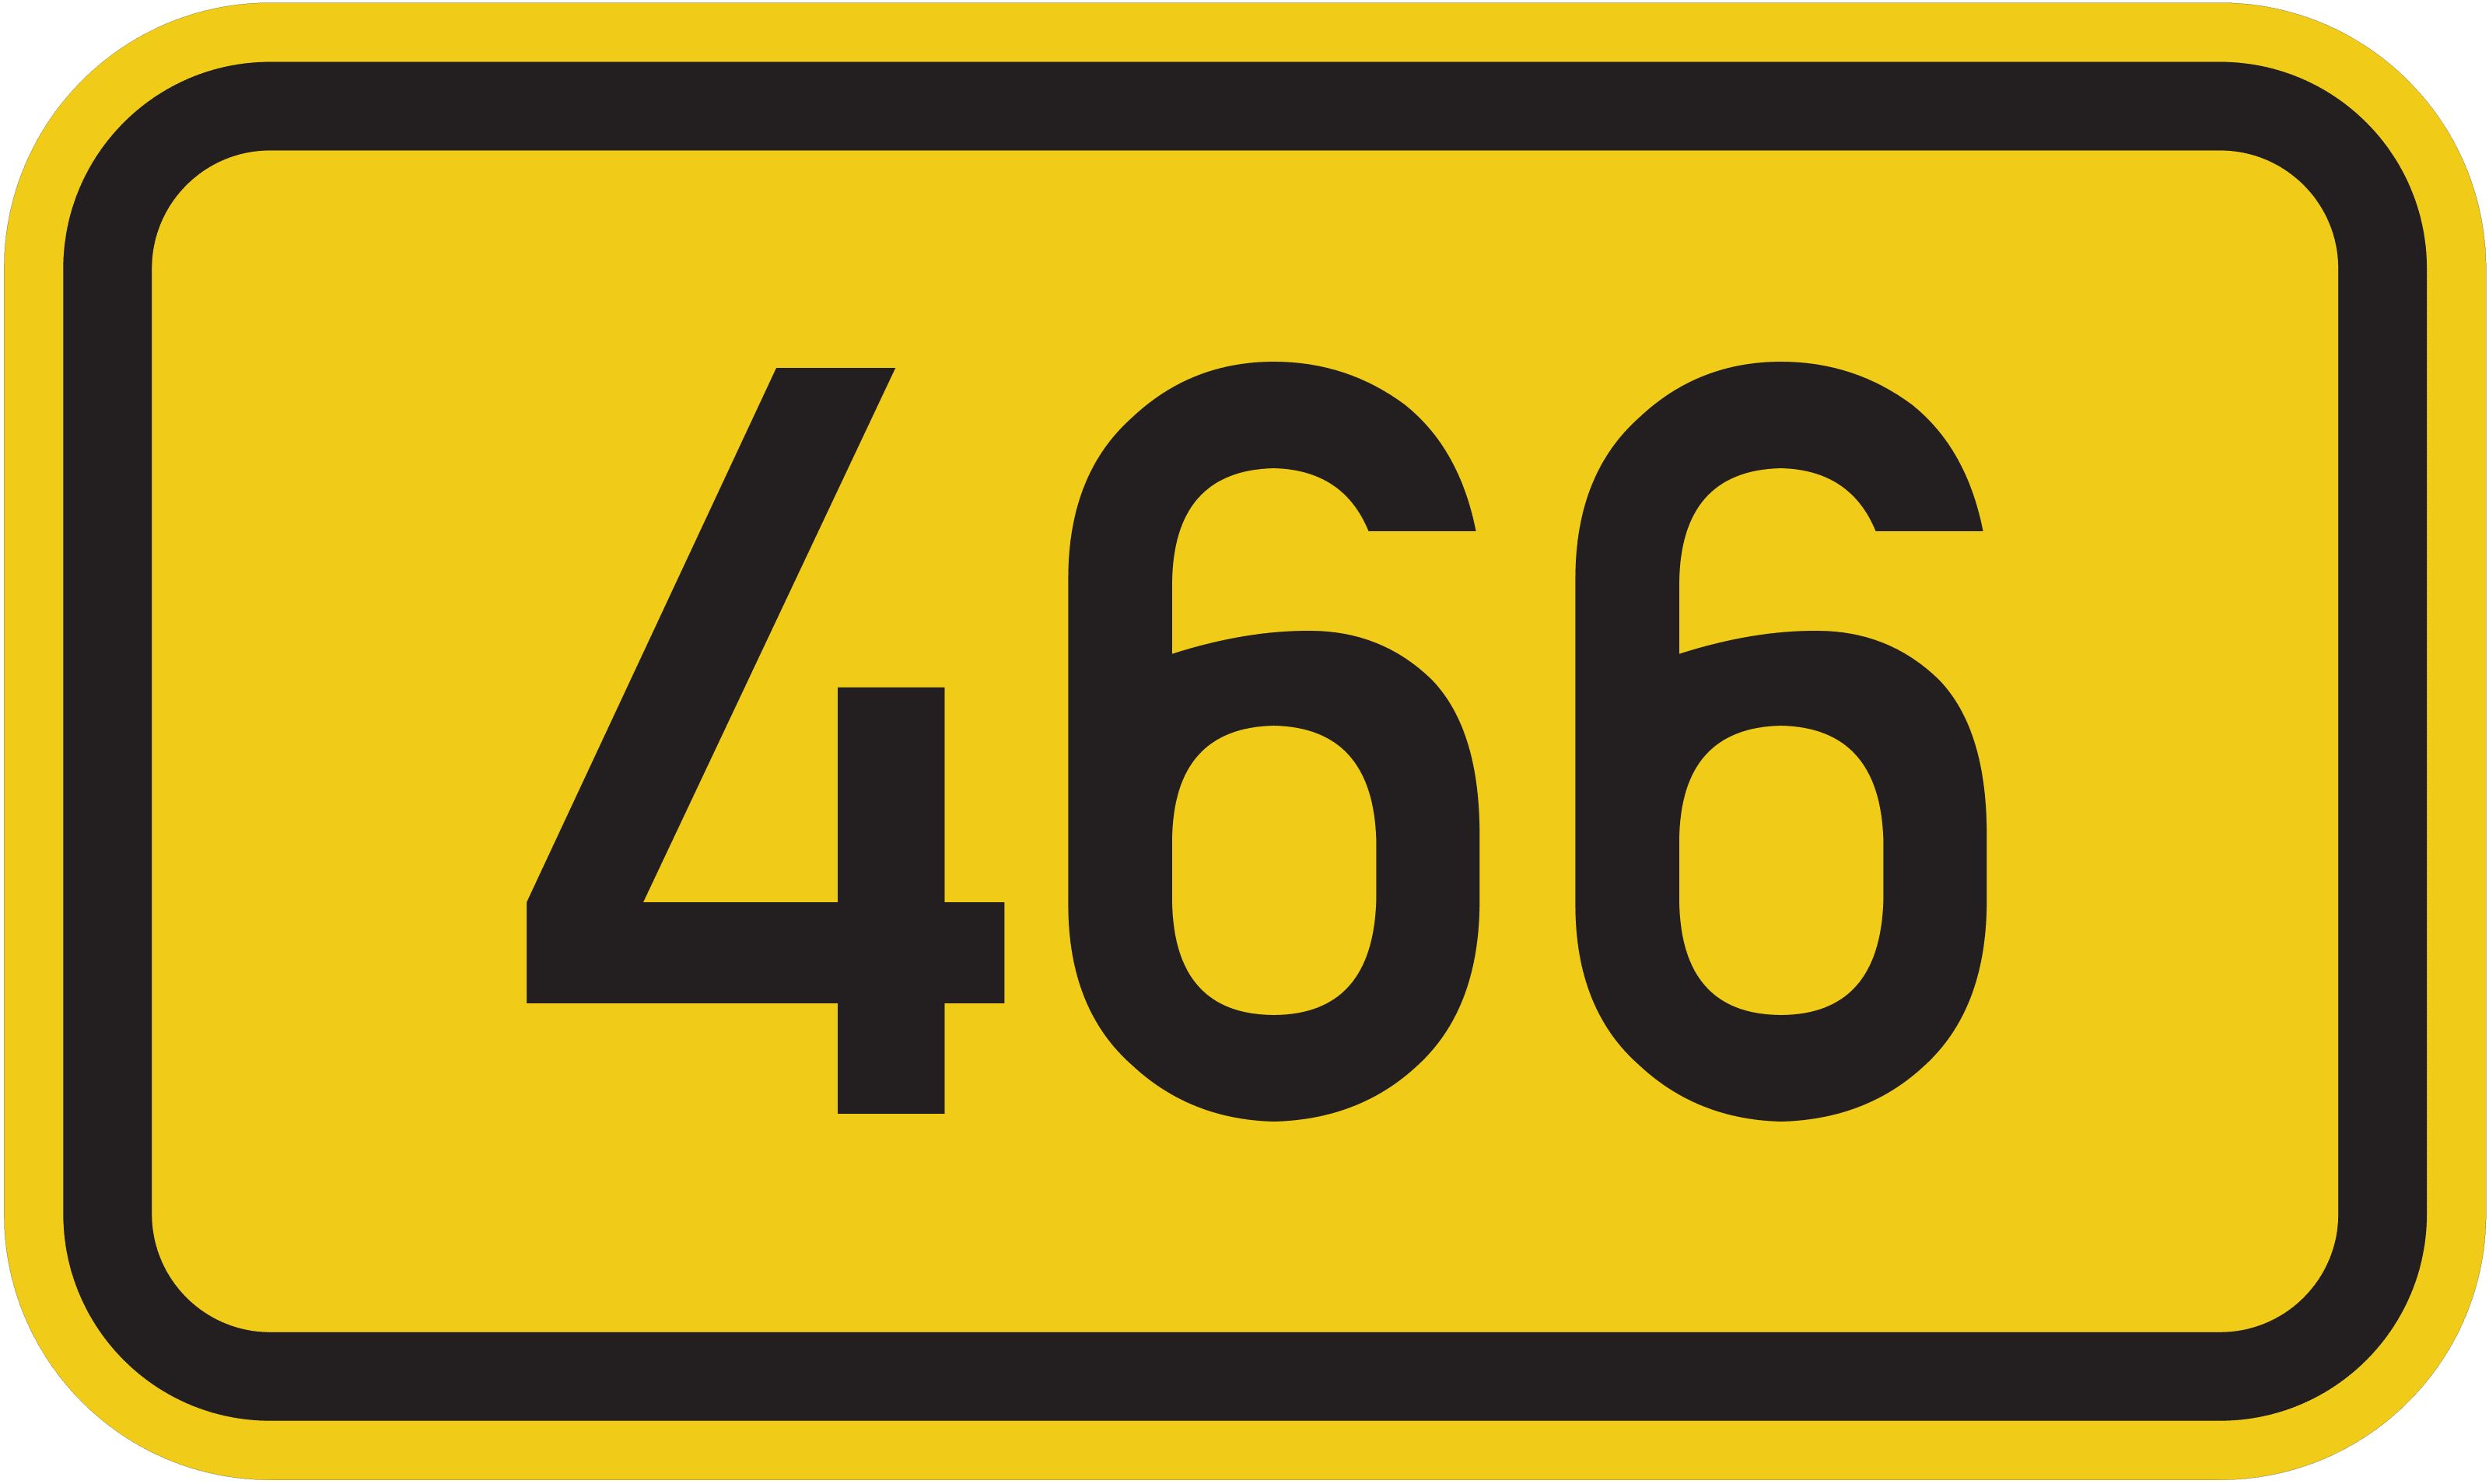 Bundesstraße B 466